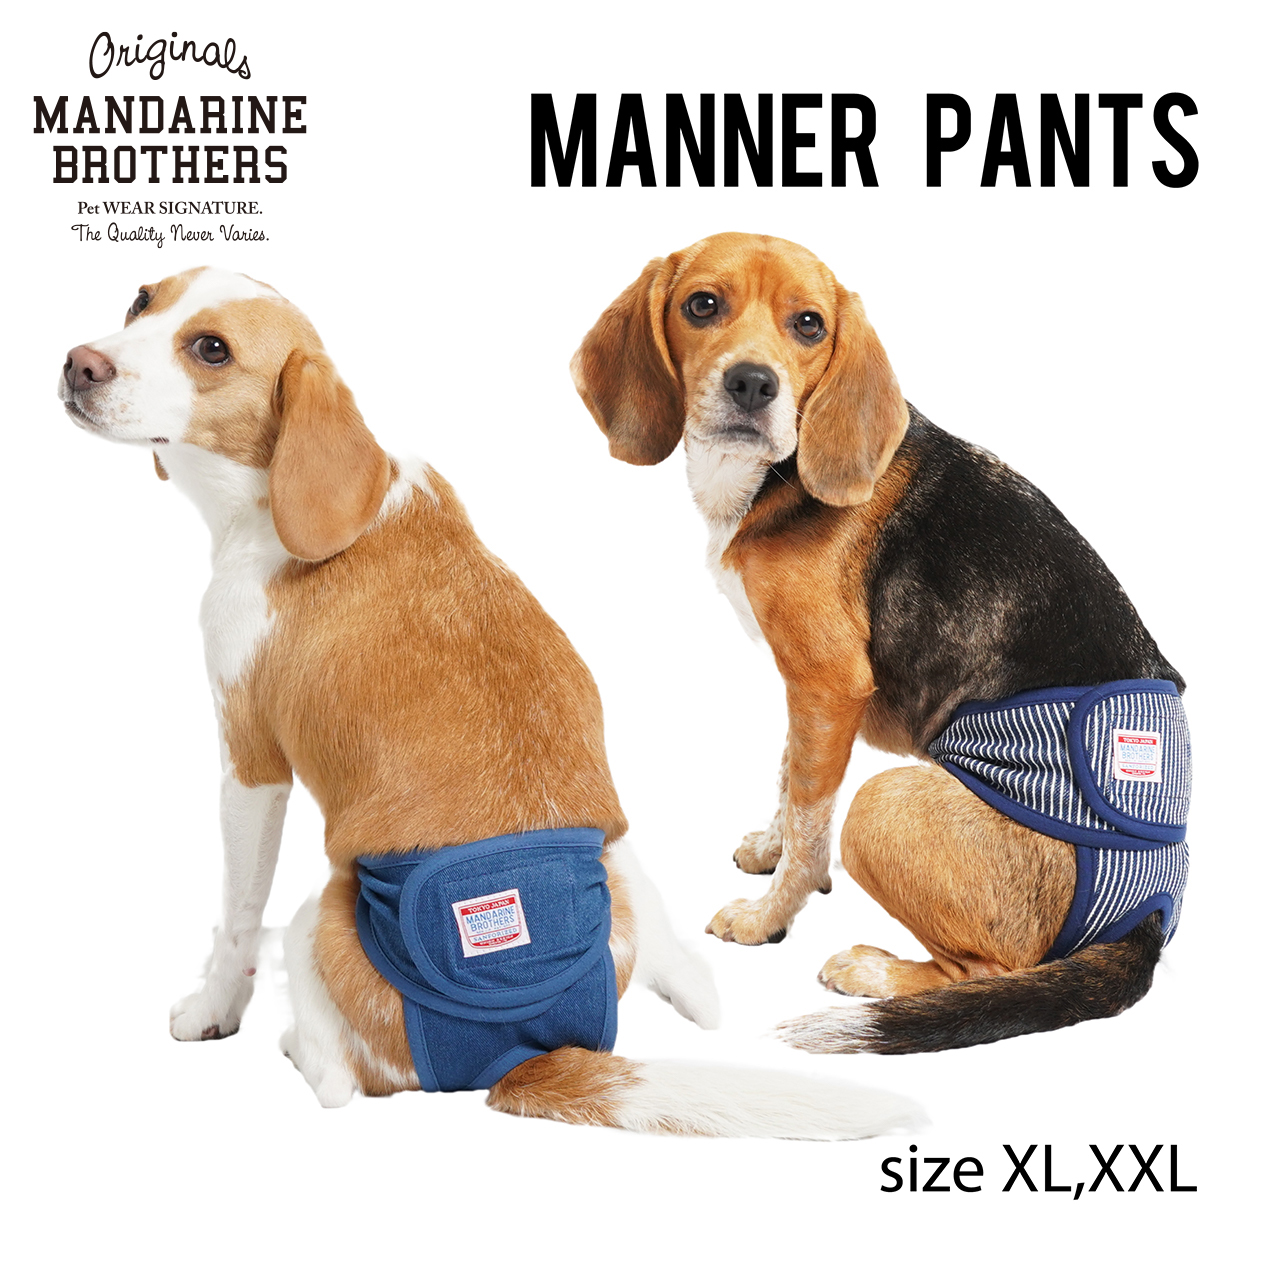 マンダリンブラザーズ 犬 マナーパンツ メス 雌 女の子 おむつ 生理 MANNER 中型犬 XXL PANTS XL BROTHERS MANDARINE 予防 定番スタイル 激安通販販売